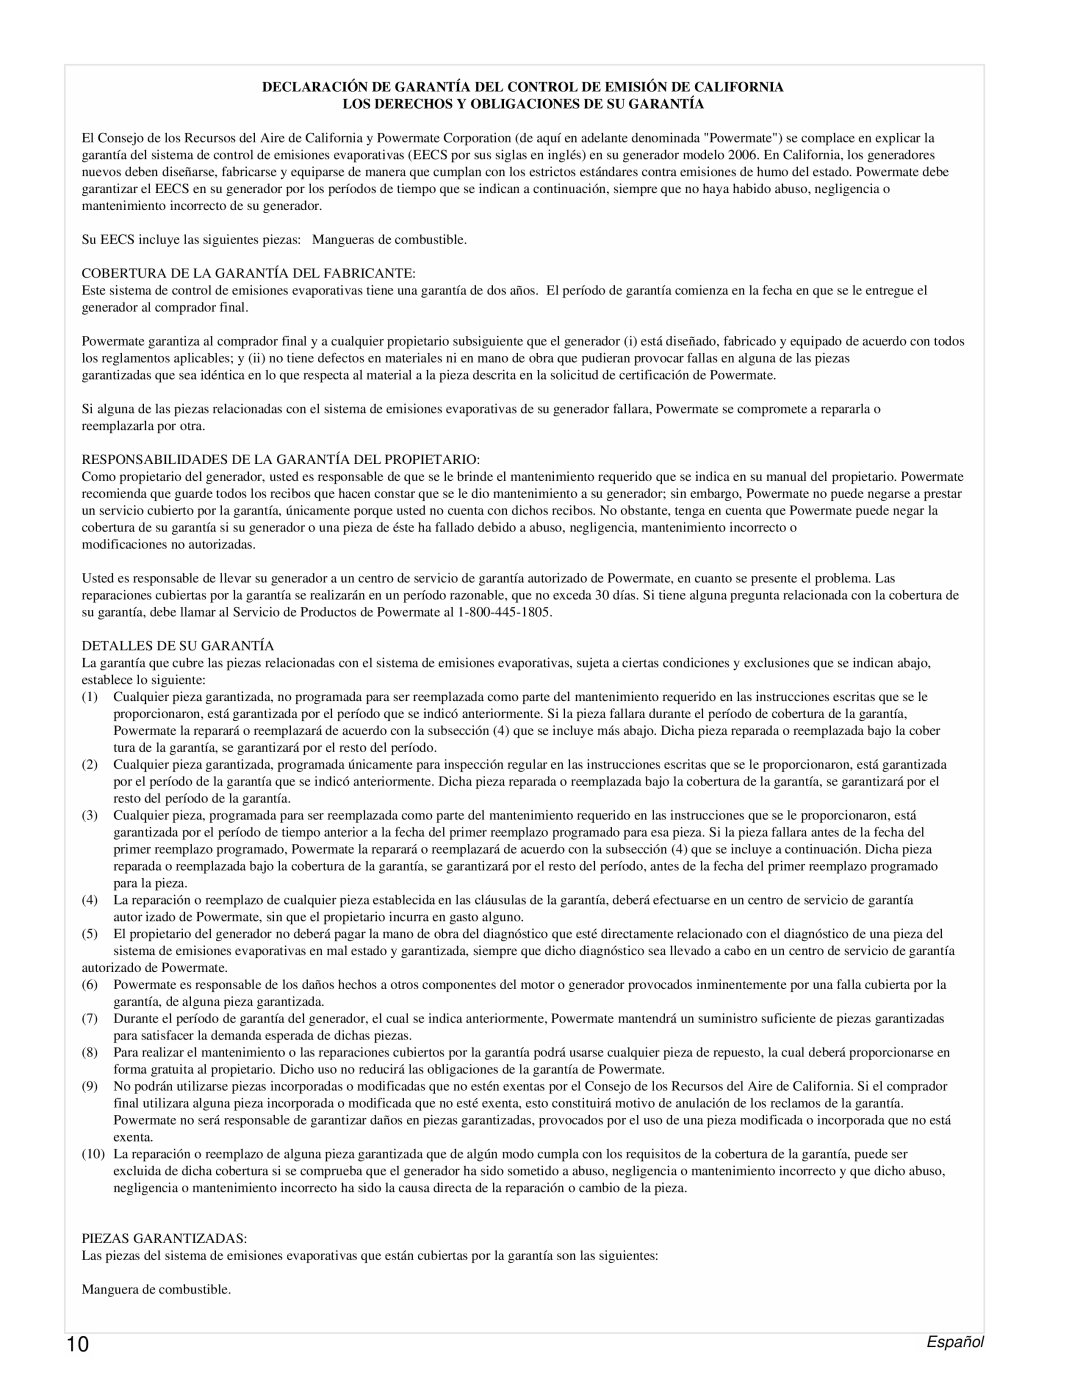 Powermate PMC543250 manual Los Derechos Y Obligaciones De Su Garantía, Español 